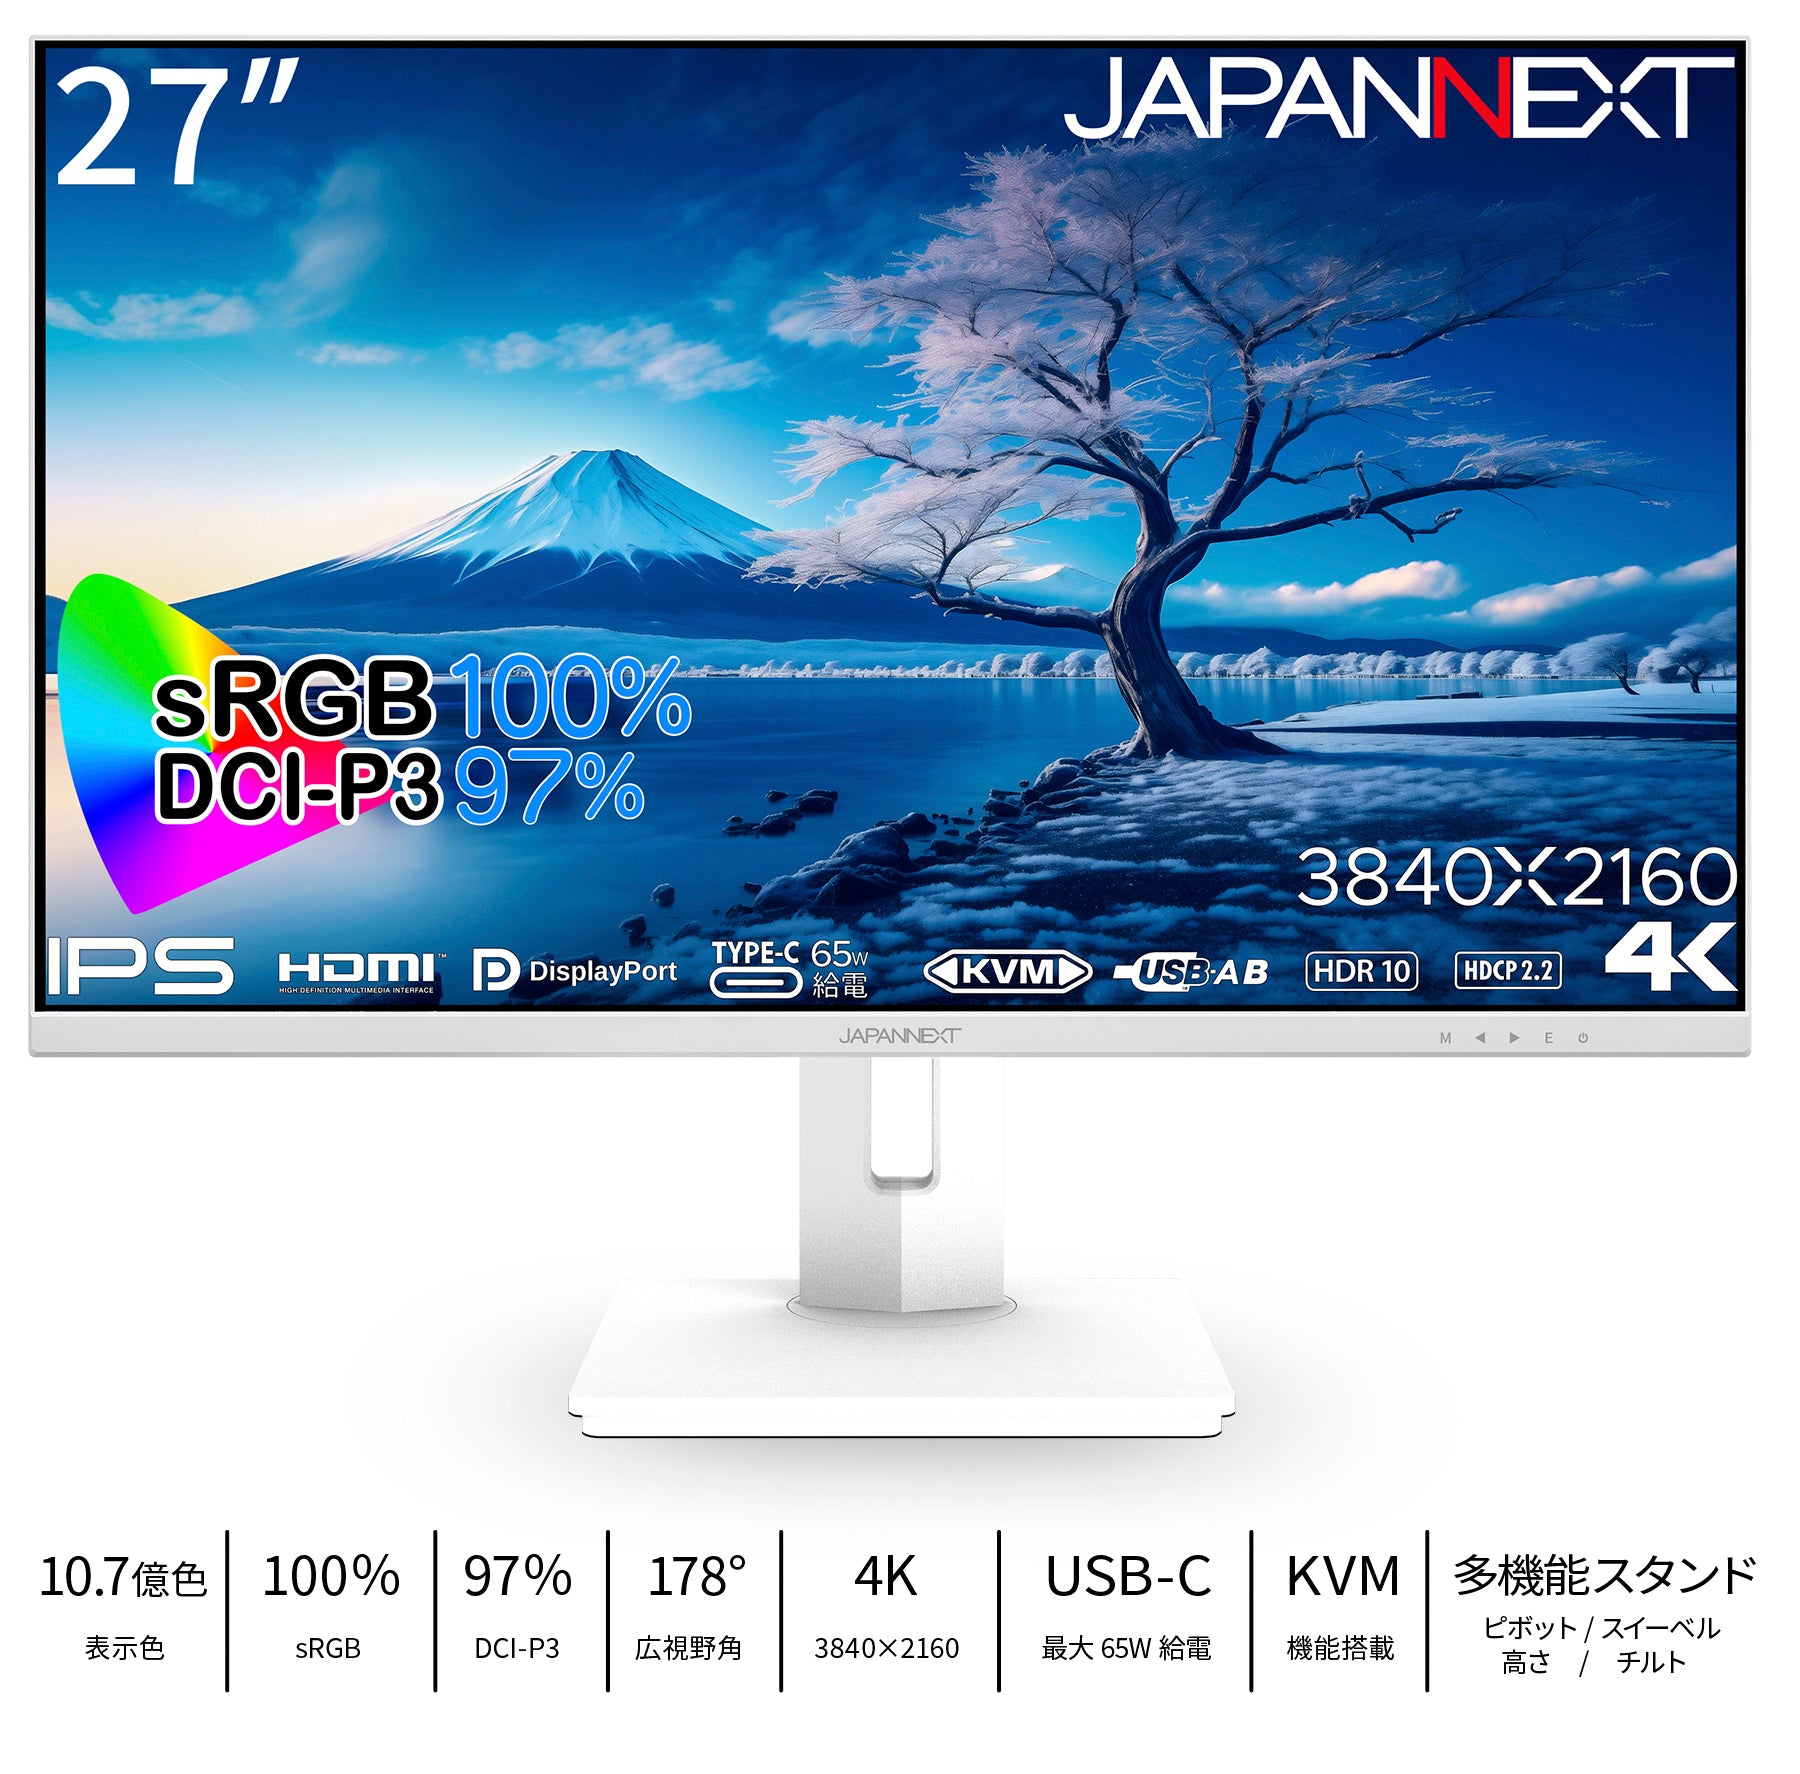 JAPANNEXT 27インチIPSパネル搭載 4K(3840x2160)解像度 液晶モニター 